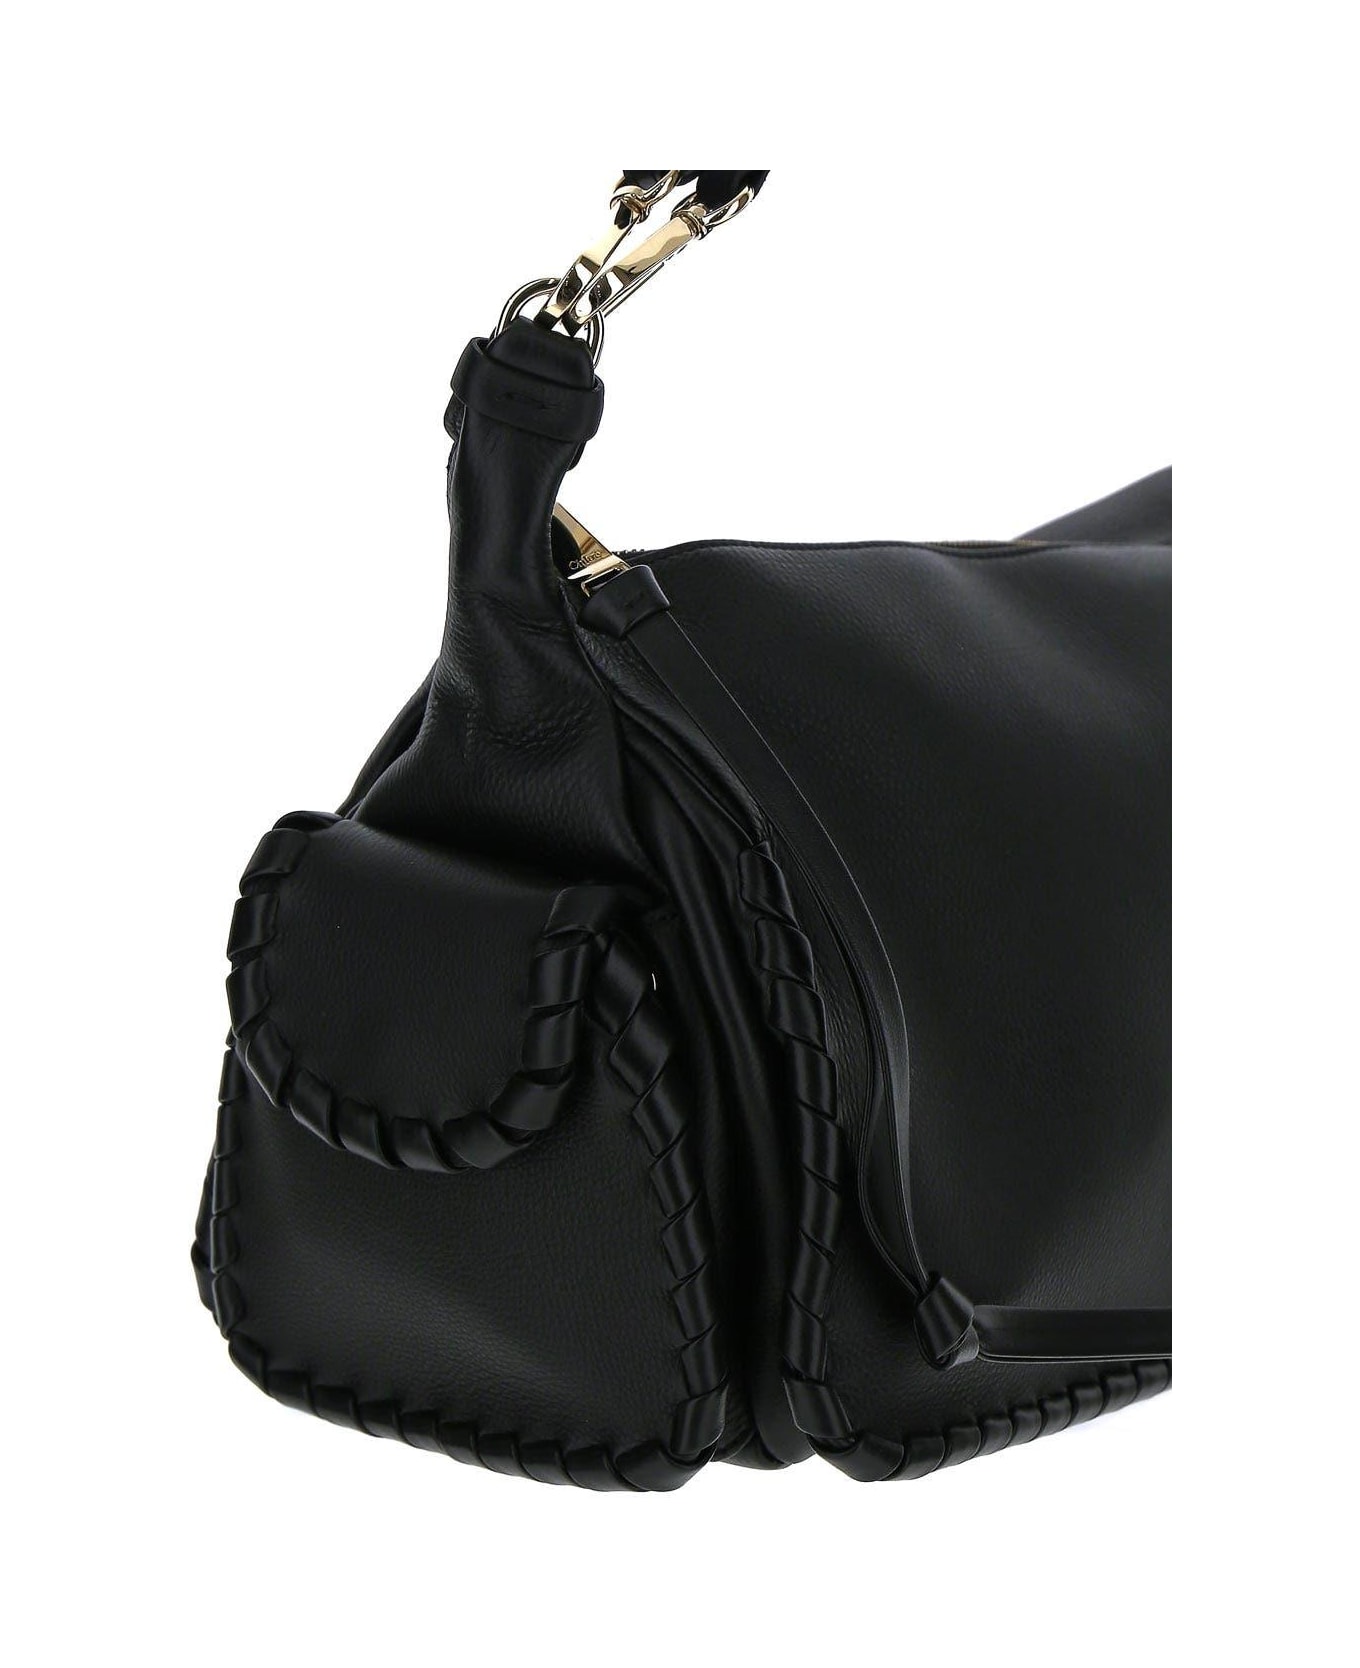 Chloé Black Leather Bag - Black トートバッグ